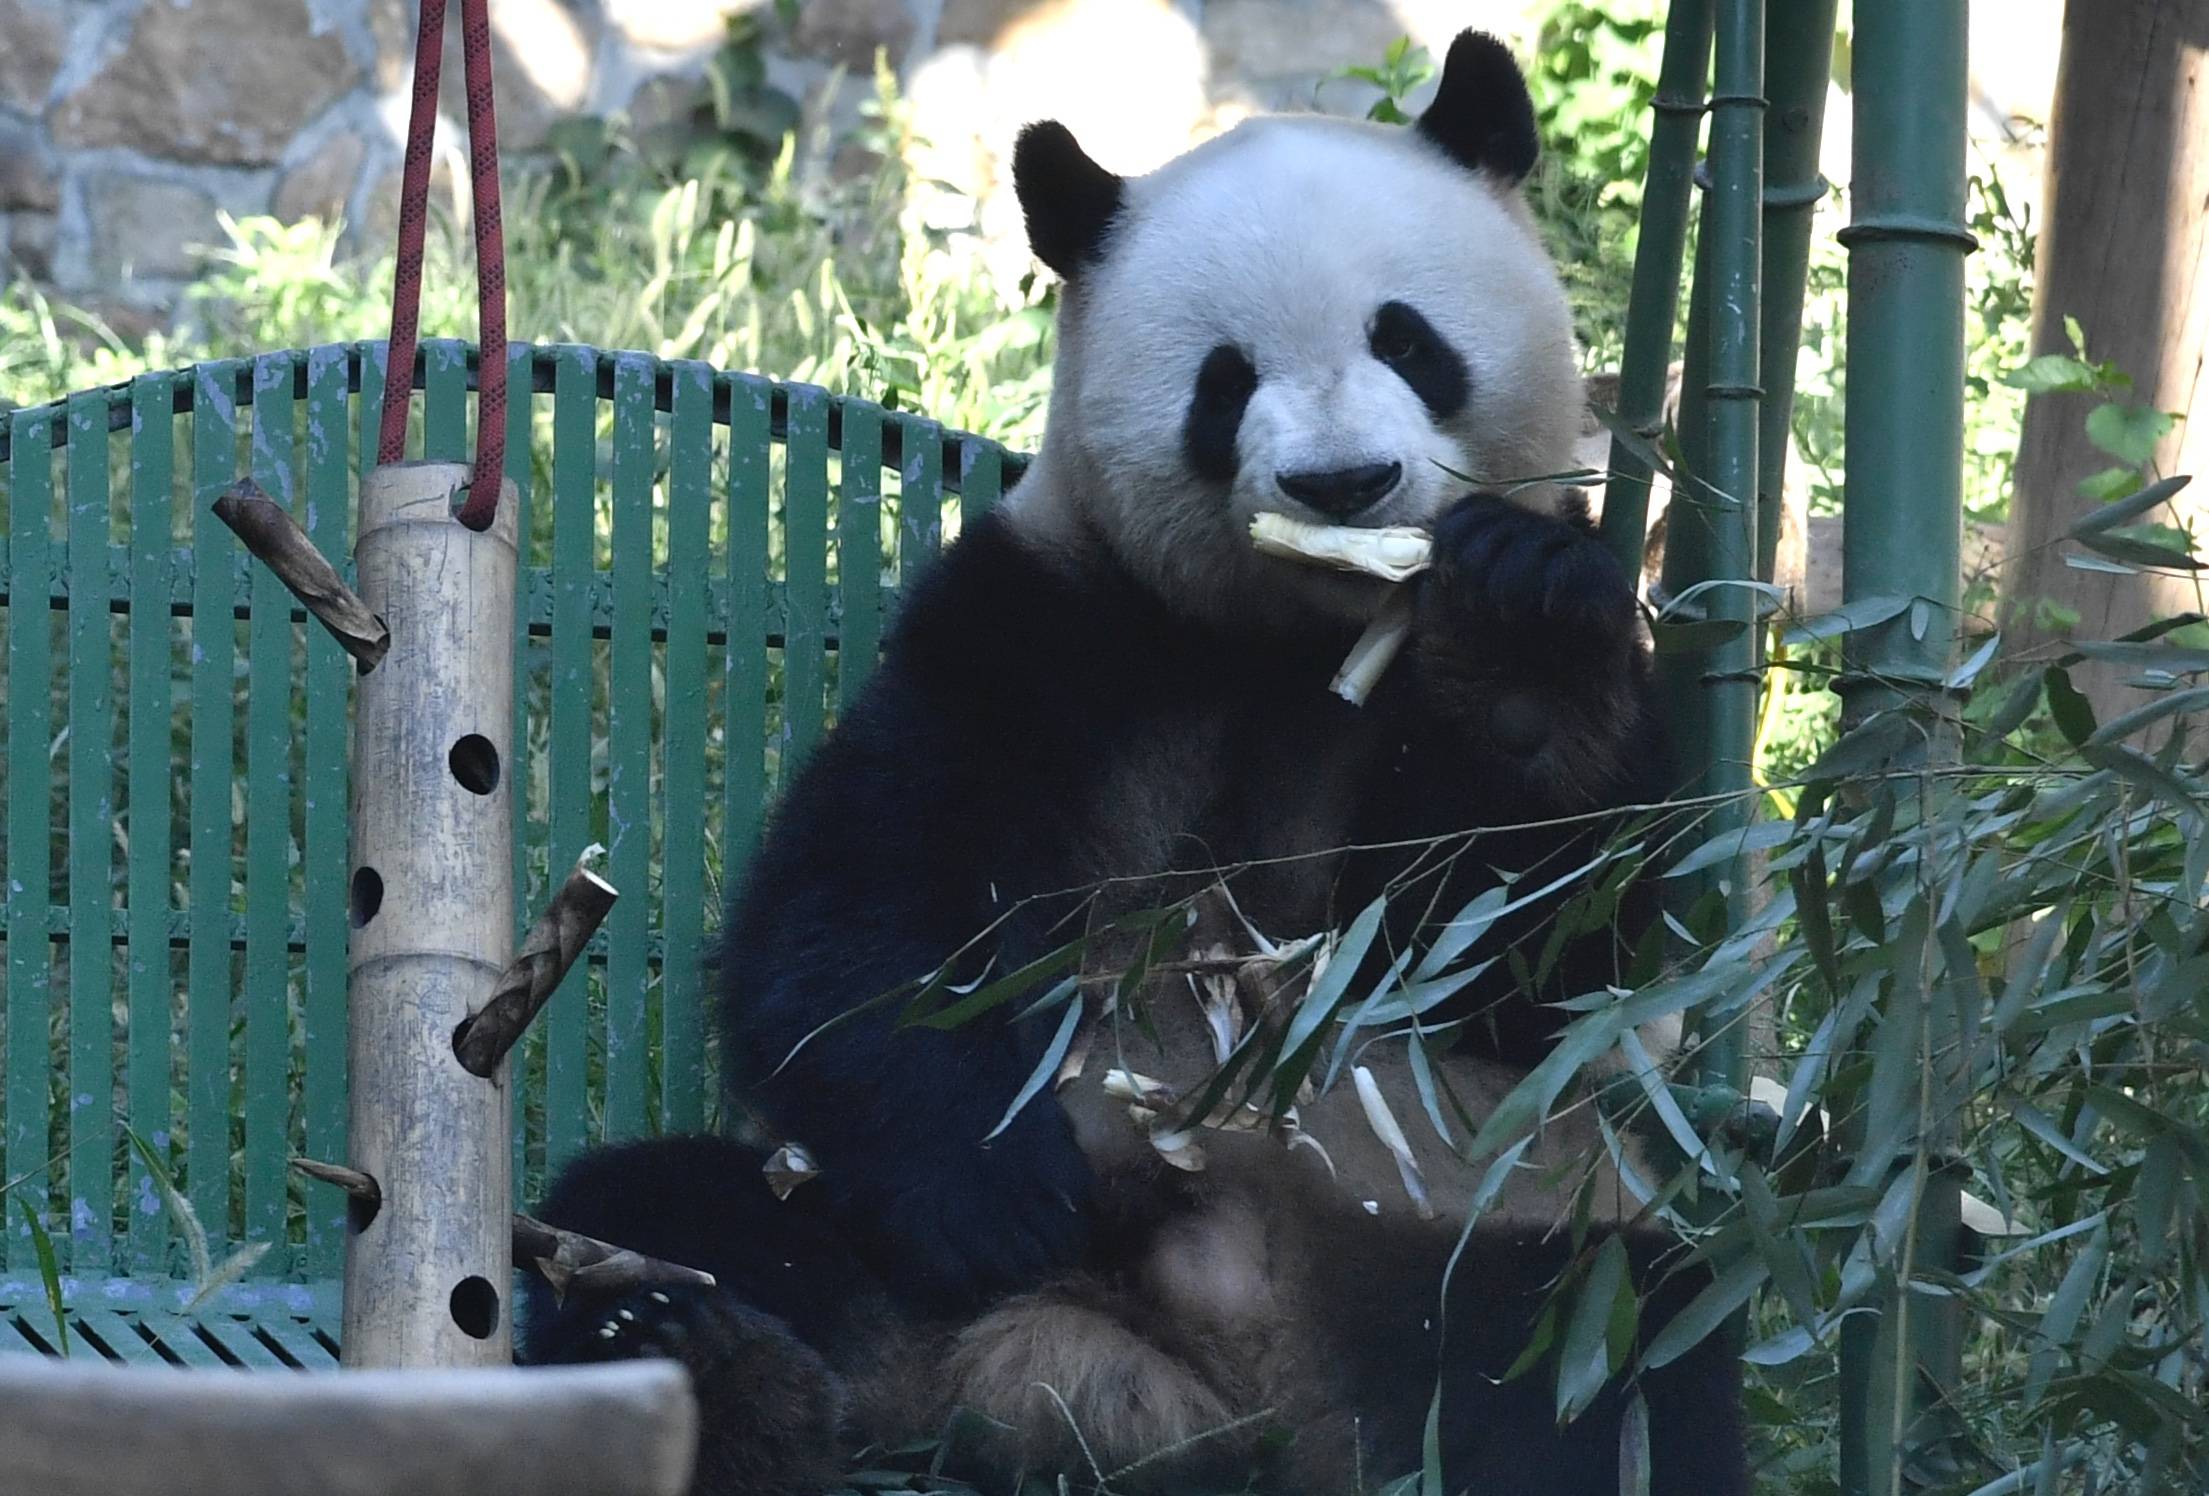 【携程攻略】南京红山森林动物园景点,很不错的一次亲子游，孩子玩儿的很开心。就是里面的饭太难吃了，贵且…